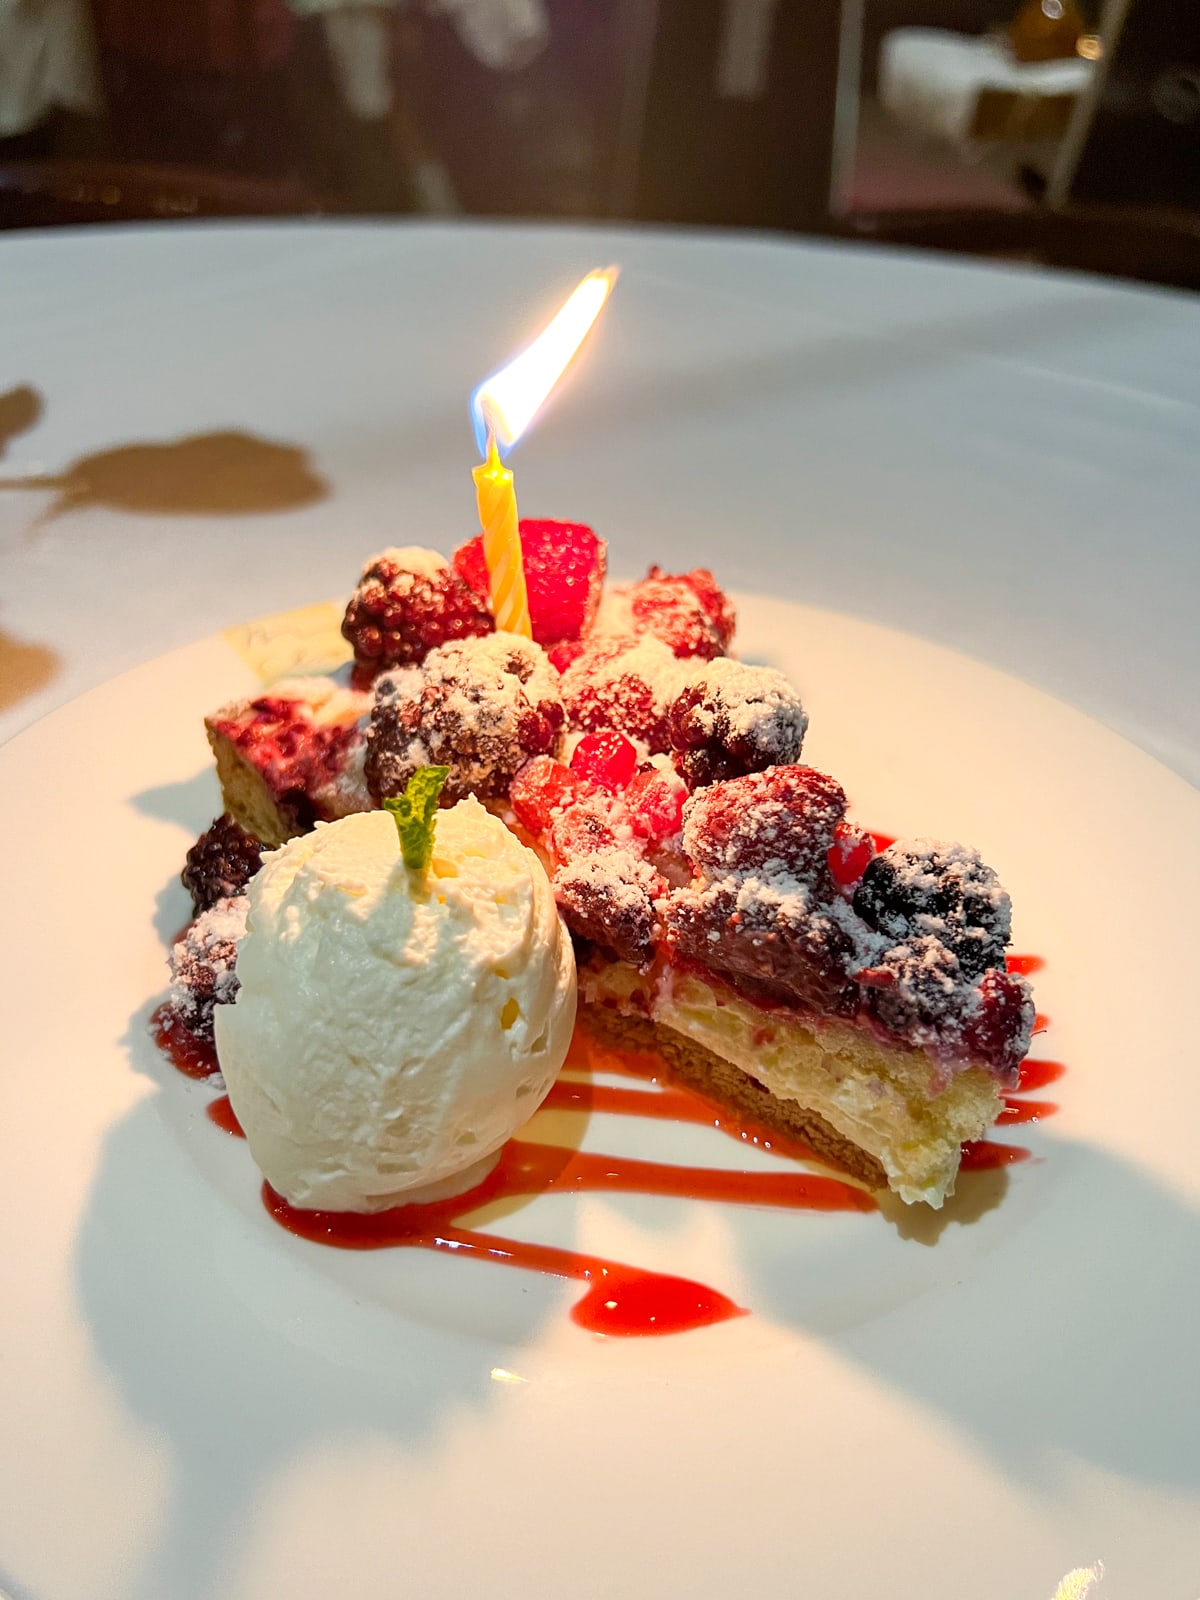 Anniversary cheesecake with berries